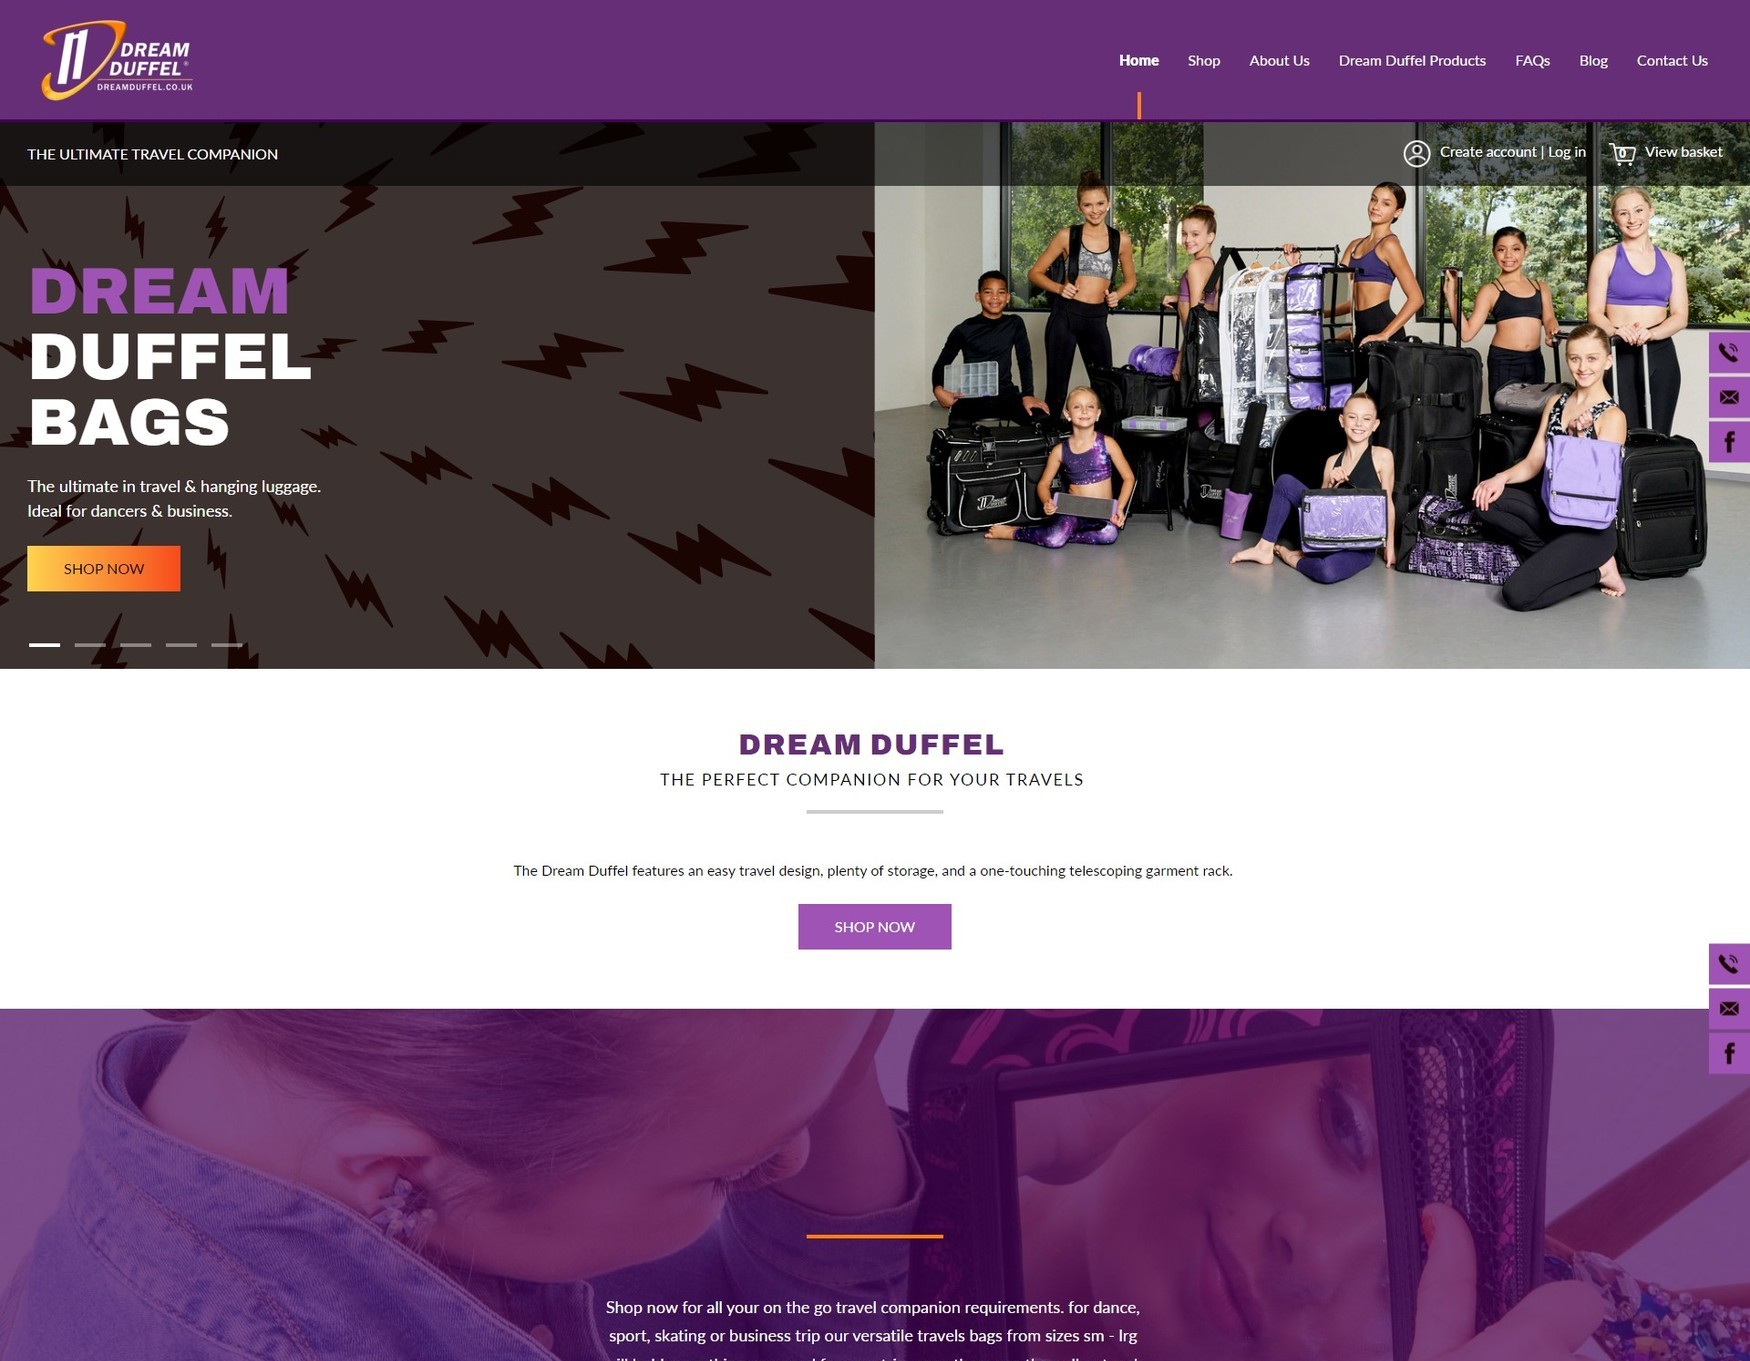 A website design for a dream duffel bag company